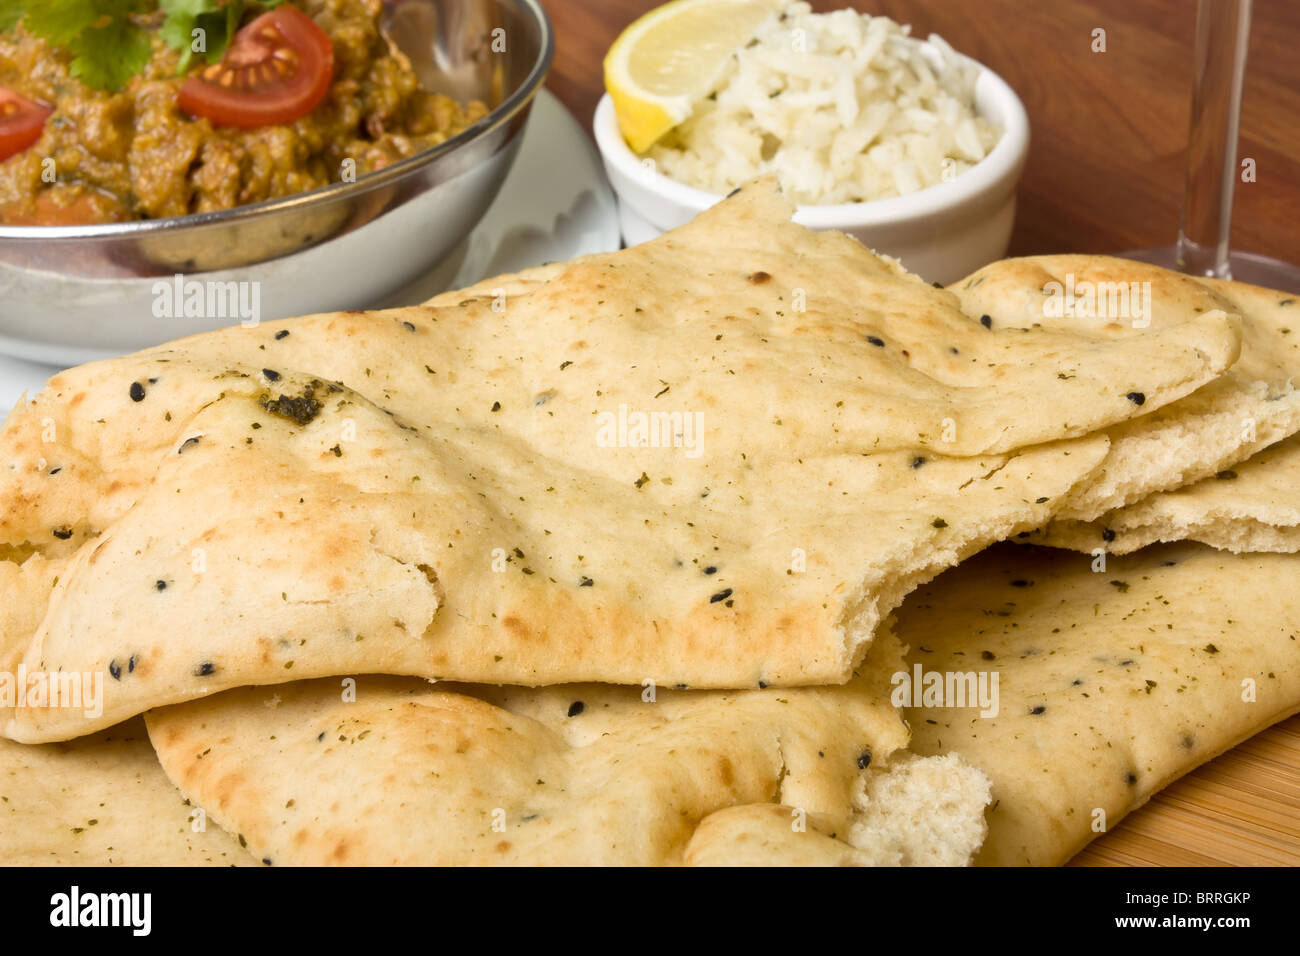 Indisches Curry Mahlzeit Huhn, Reis und Naan Brot. Stockfoto